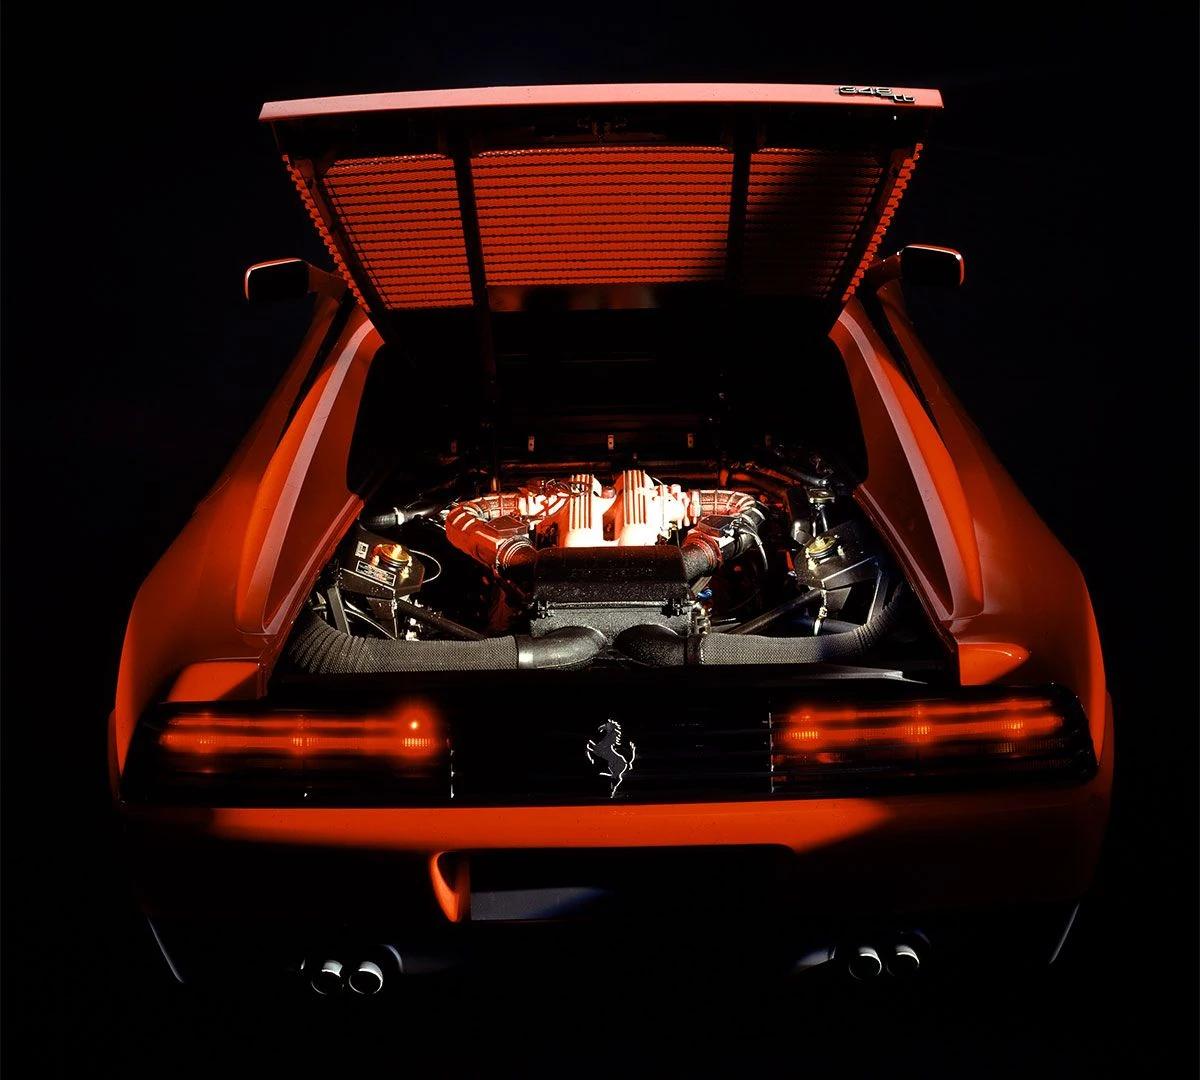 ferrari 348 engine - Is Ferrari 348 good